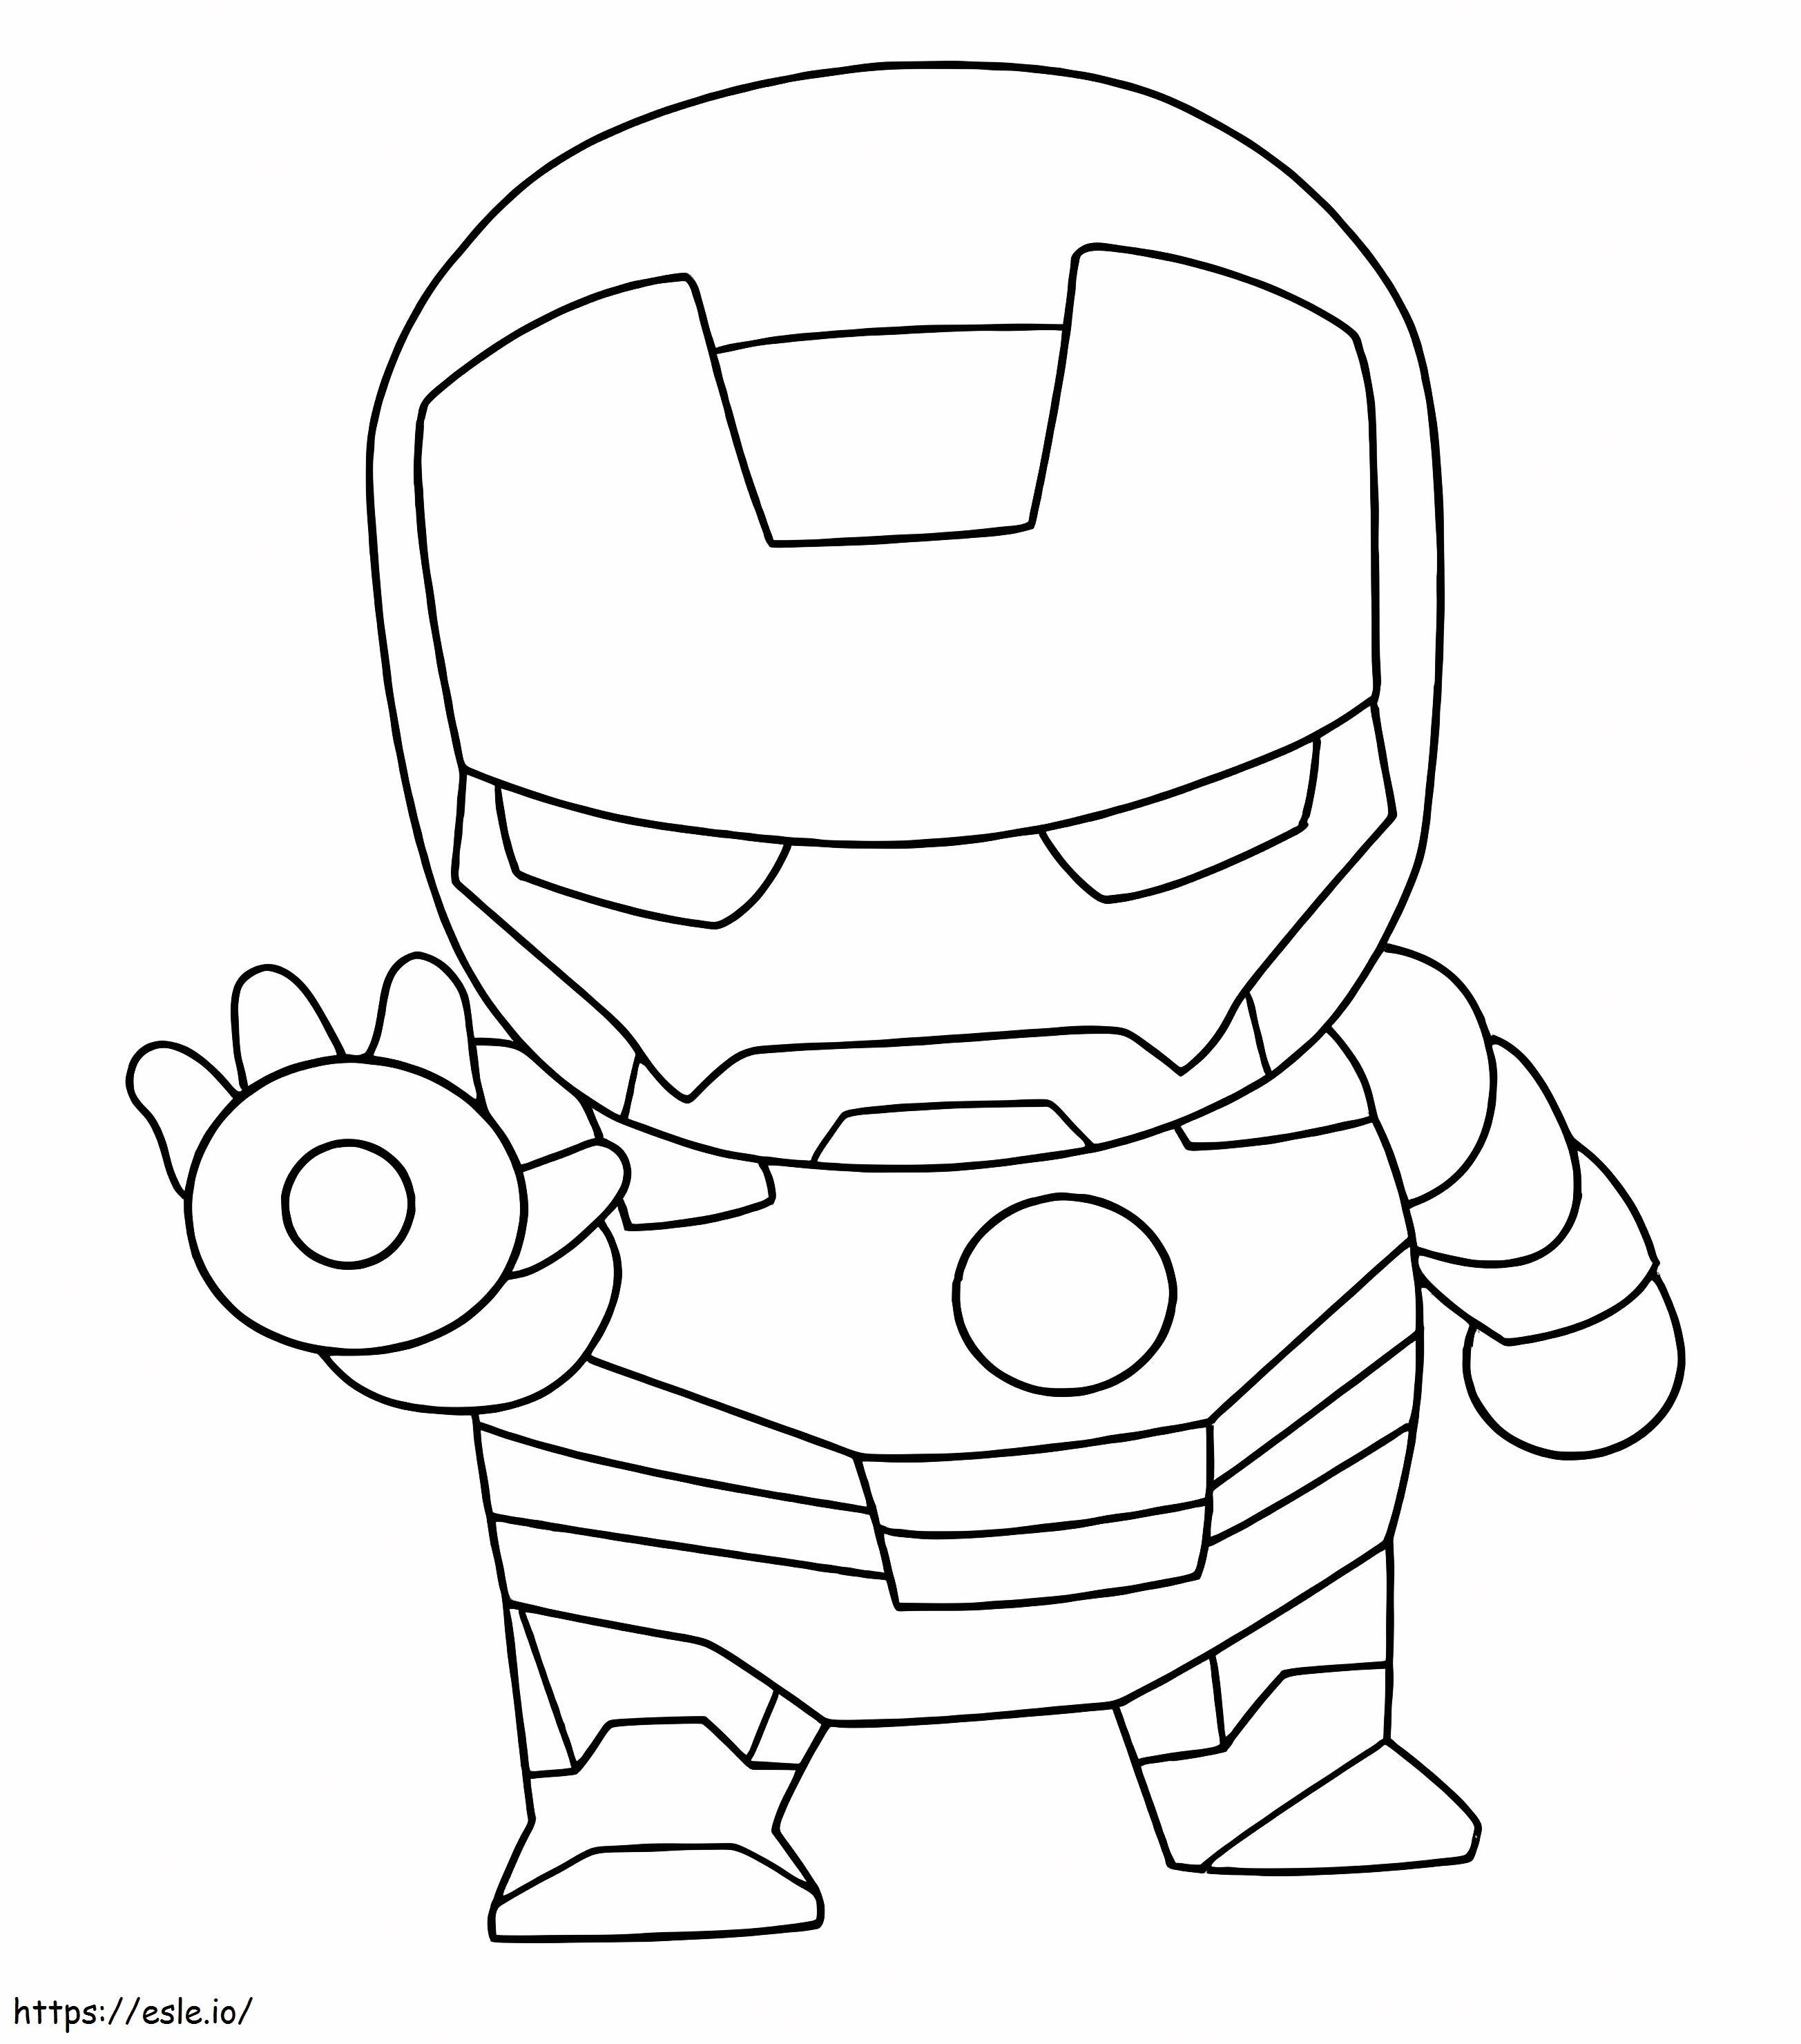 Chibi Iron Man Fighting coloring page